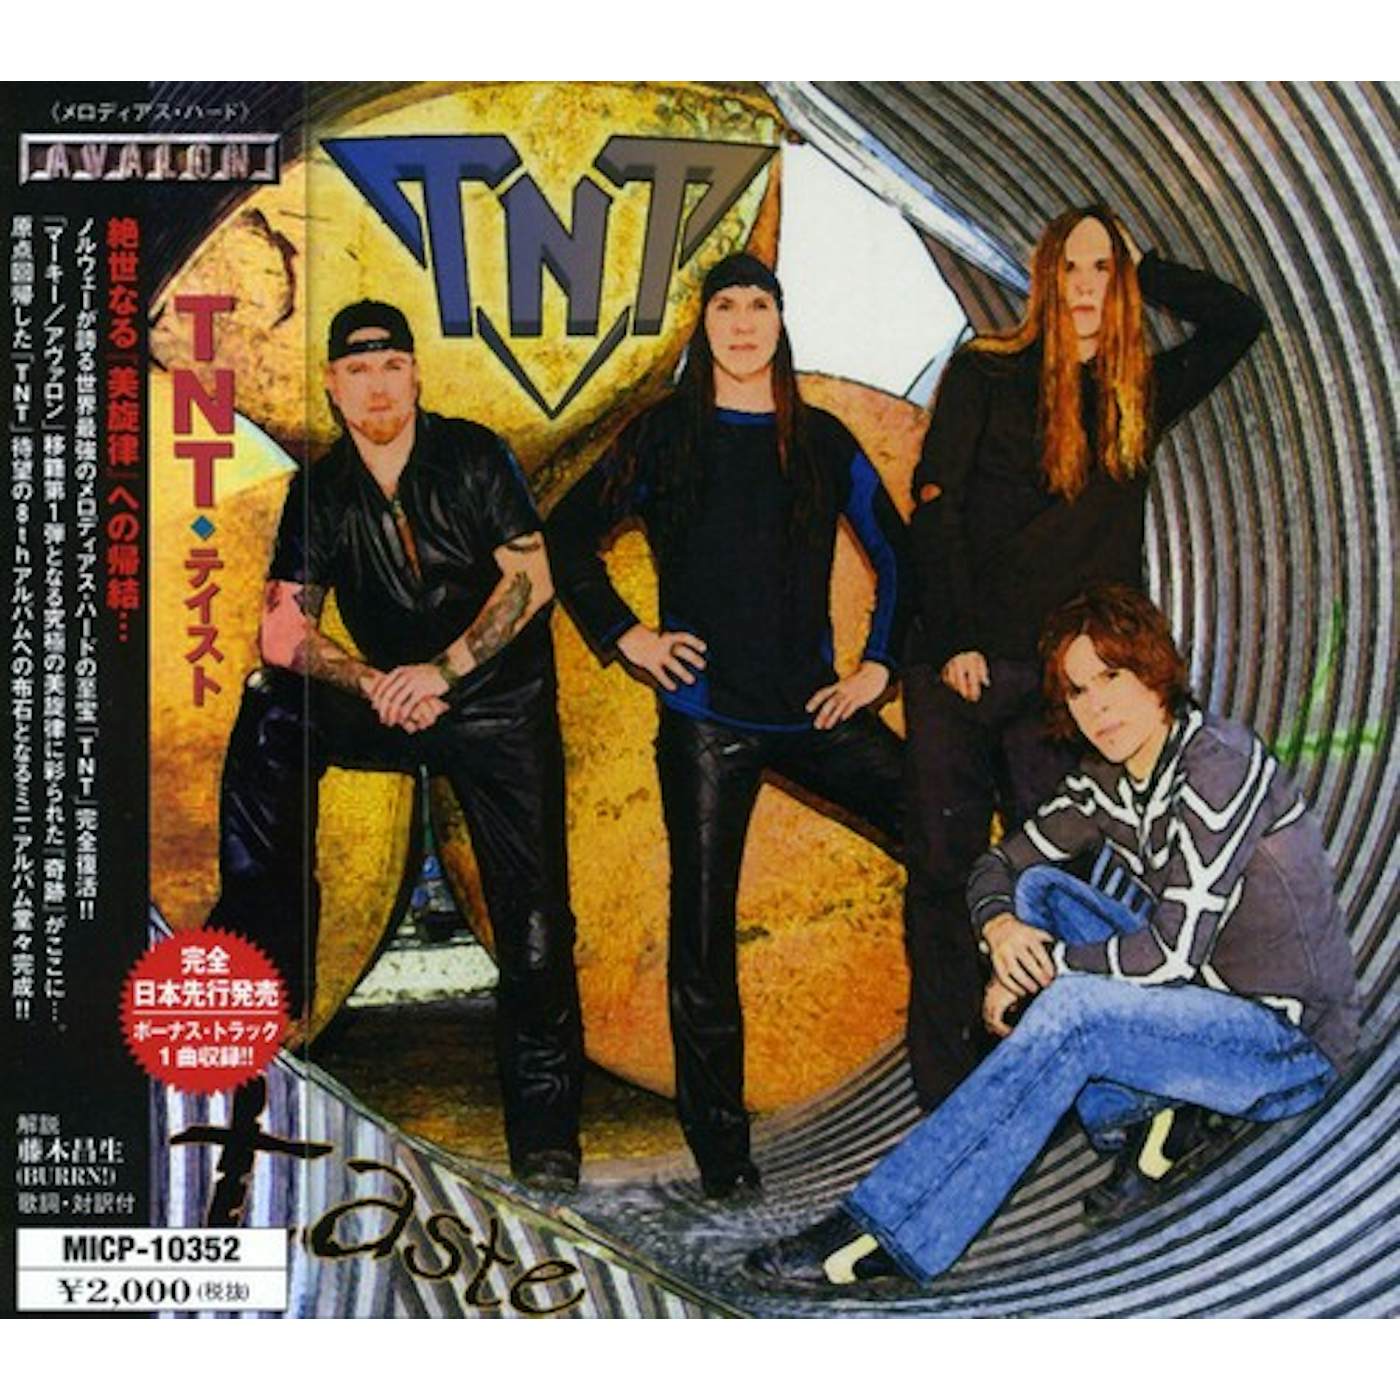 TNT TASTE CD